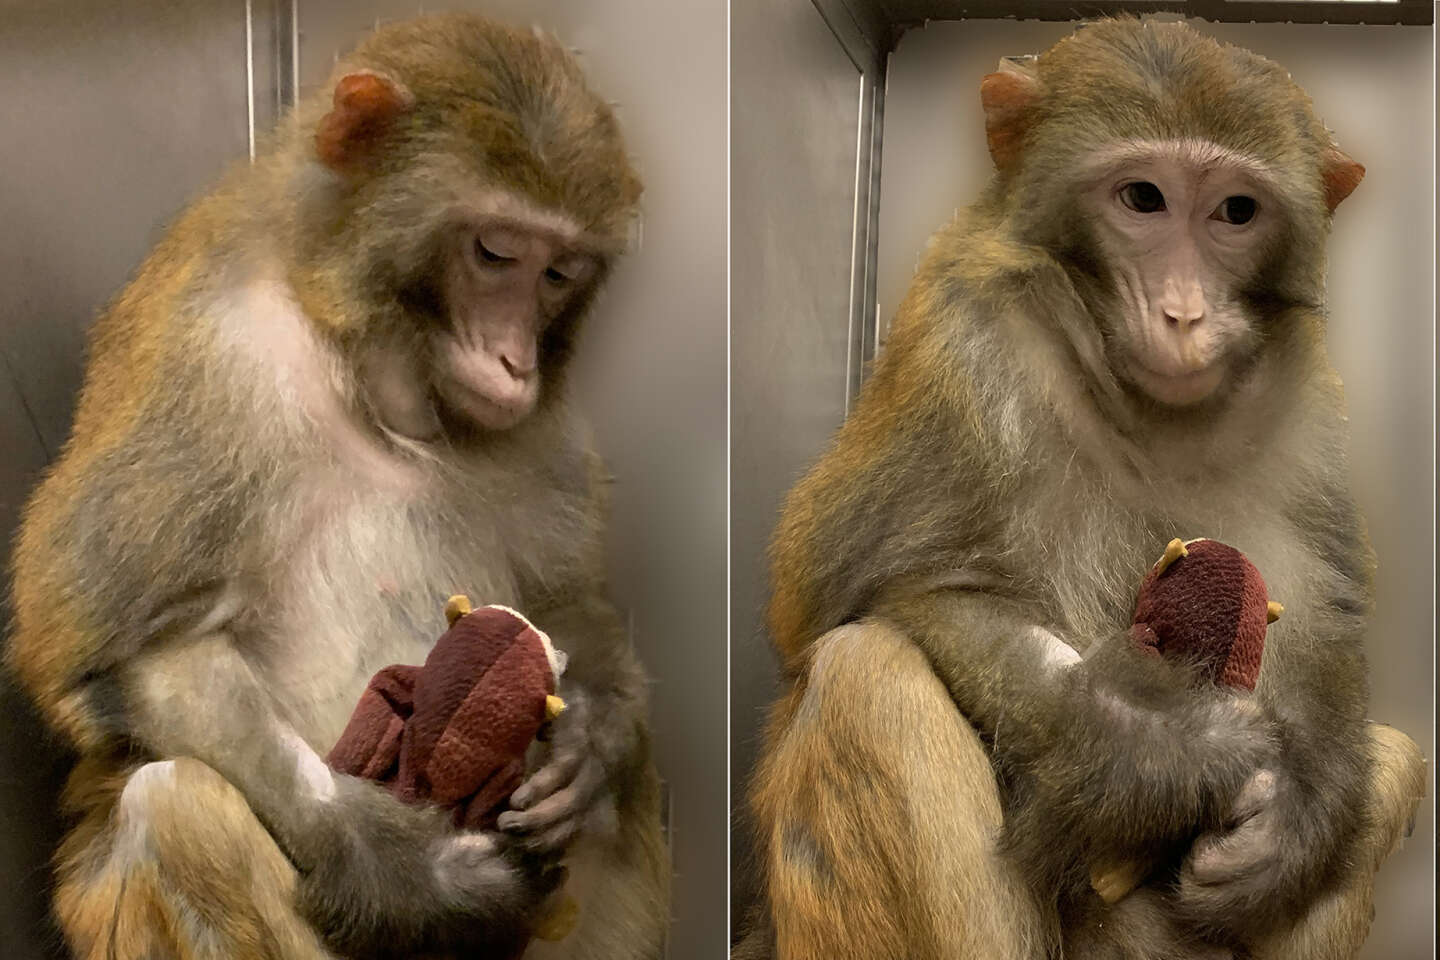 Des recherches de l’université Harvard sur des macaques suscitent l’indignation de primatologues